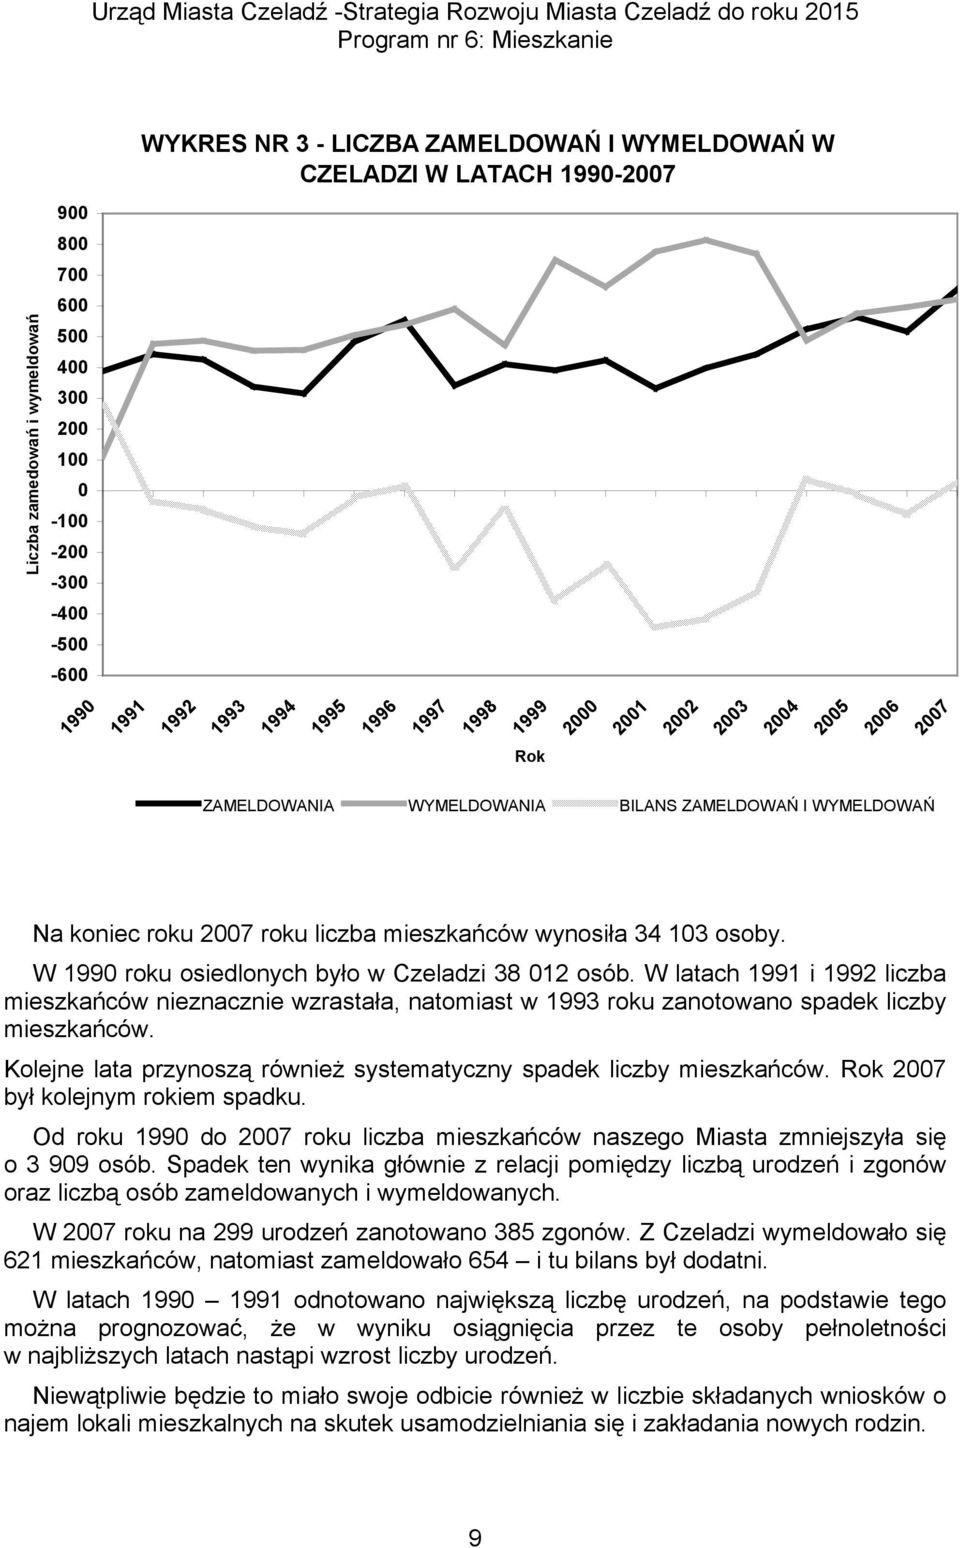 W 1990 roku osiedlonych było w Czeladzi 38 012 osób. W latach 1991 i 1992 liczba mieszkańców nieznacznie wzrastała, natomiast w 1993 roku zanotowano spadek liczby mieszkańców.